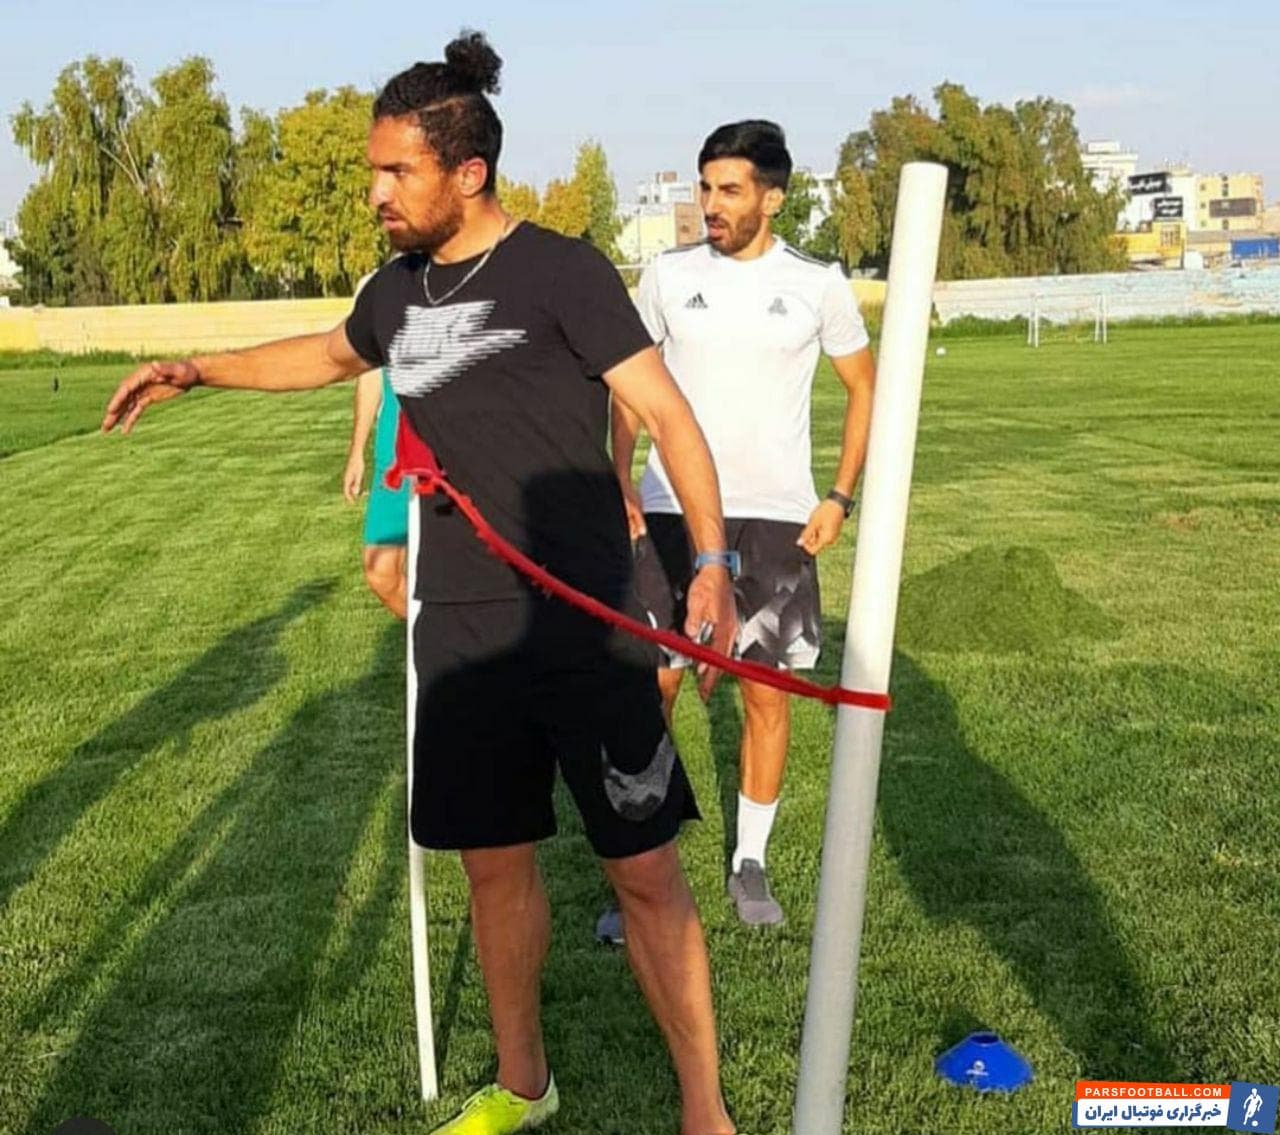 محمد ایرانپوریان ، گودرزی و خالد شفیعی که اصالتا شیرازی هستند از قدیم رابطه خوبی با هم داشتند و حالا نیز تصمیم گرفتند همراه یکدیگر تمرینات را انجام دهند.